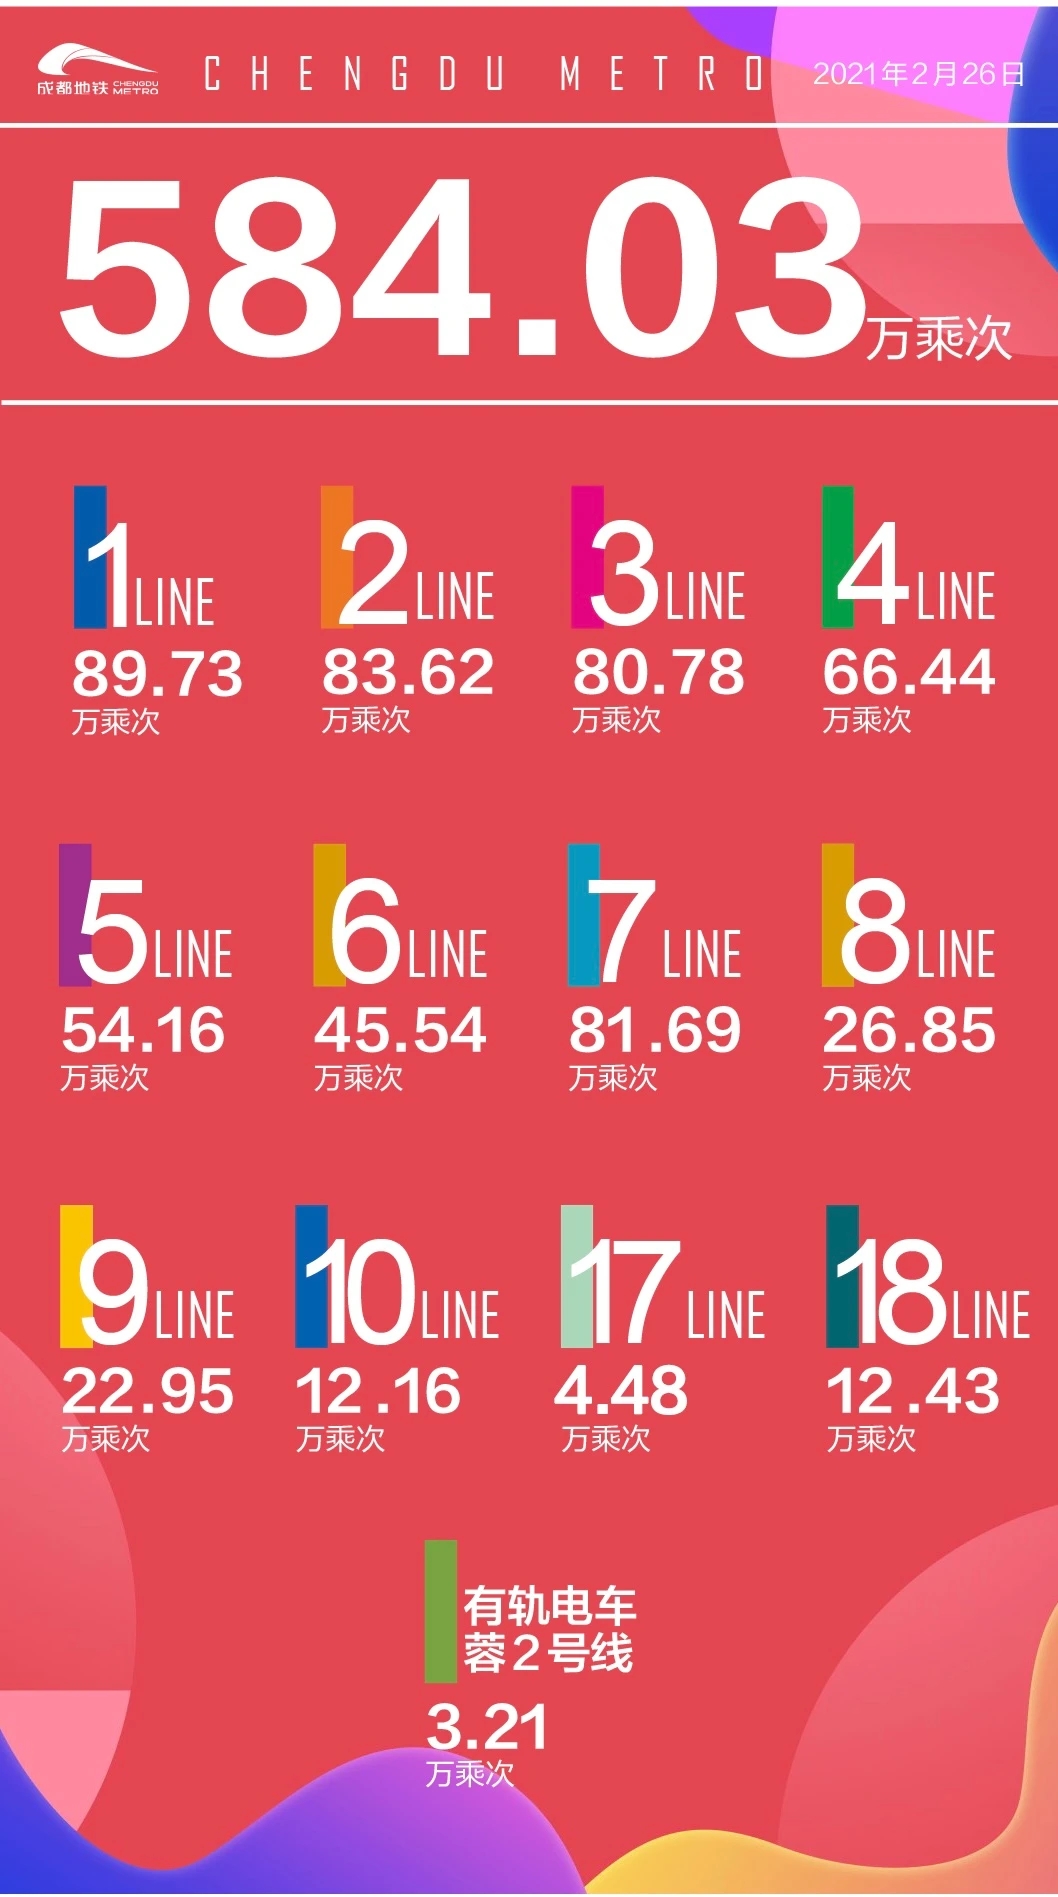 584.03万乘次！成都地铁2021首次单日客运量刷新历史纪录